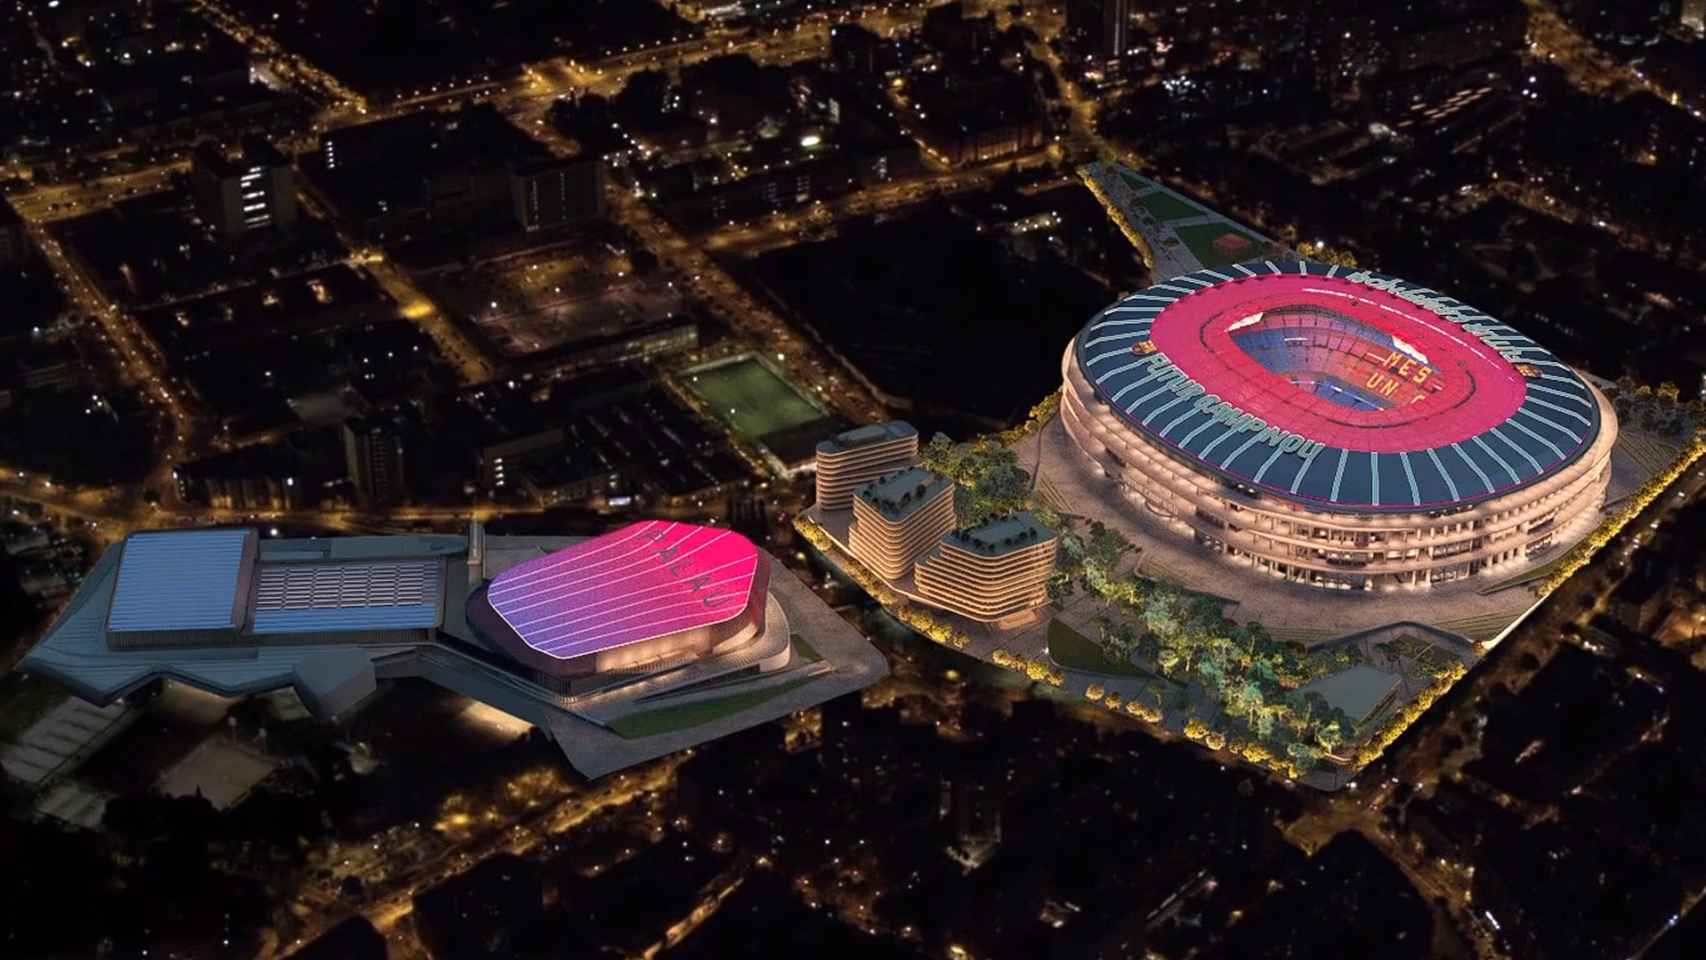 El modelo del futuro Camp Nou que siguen en las obras del Espai Barça